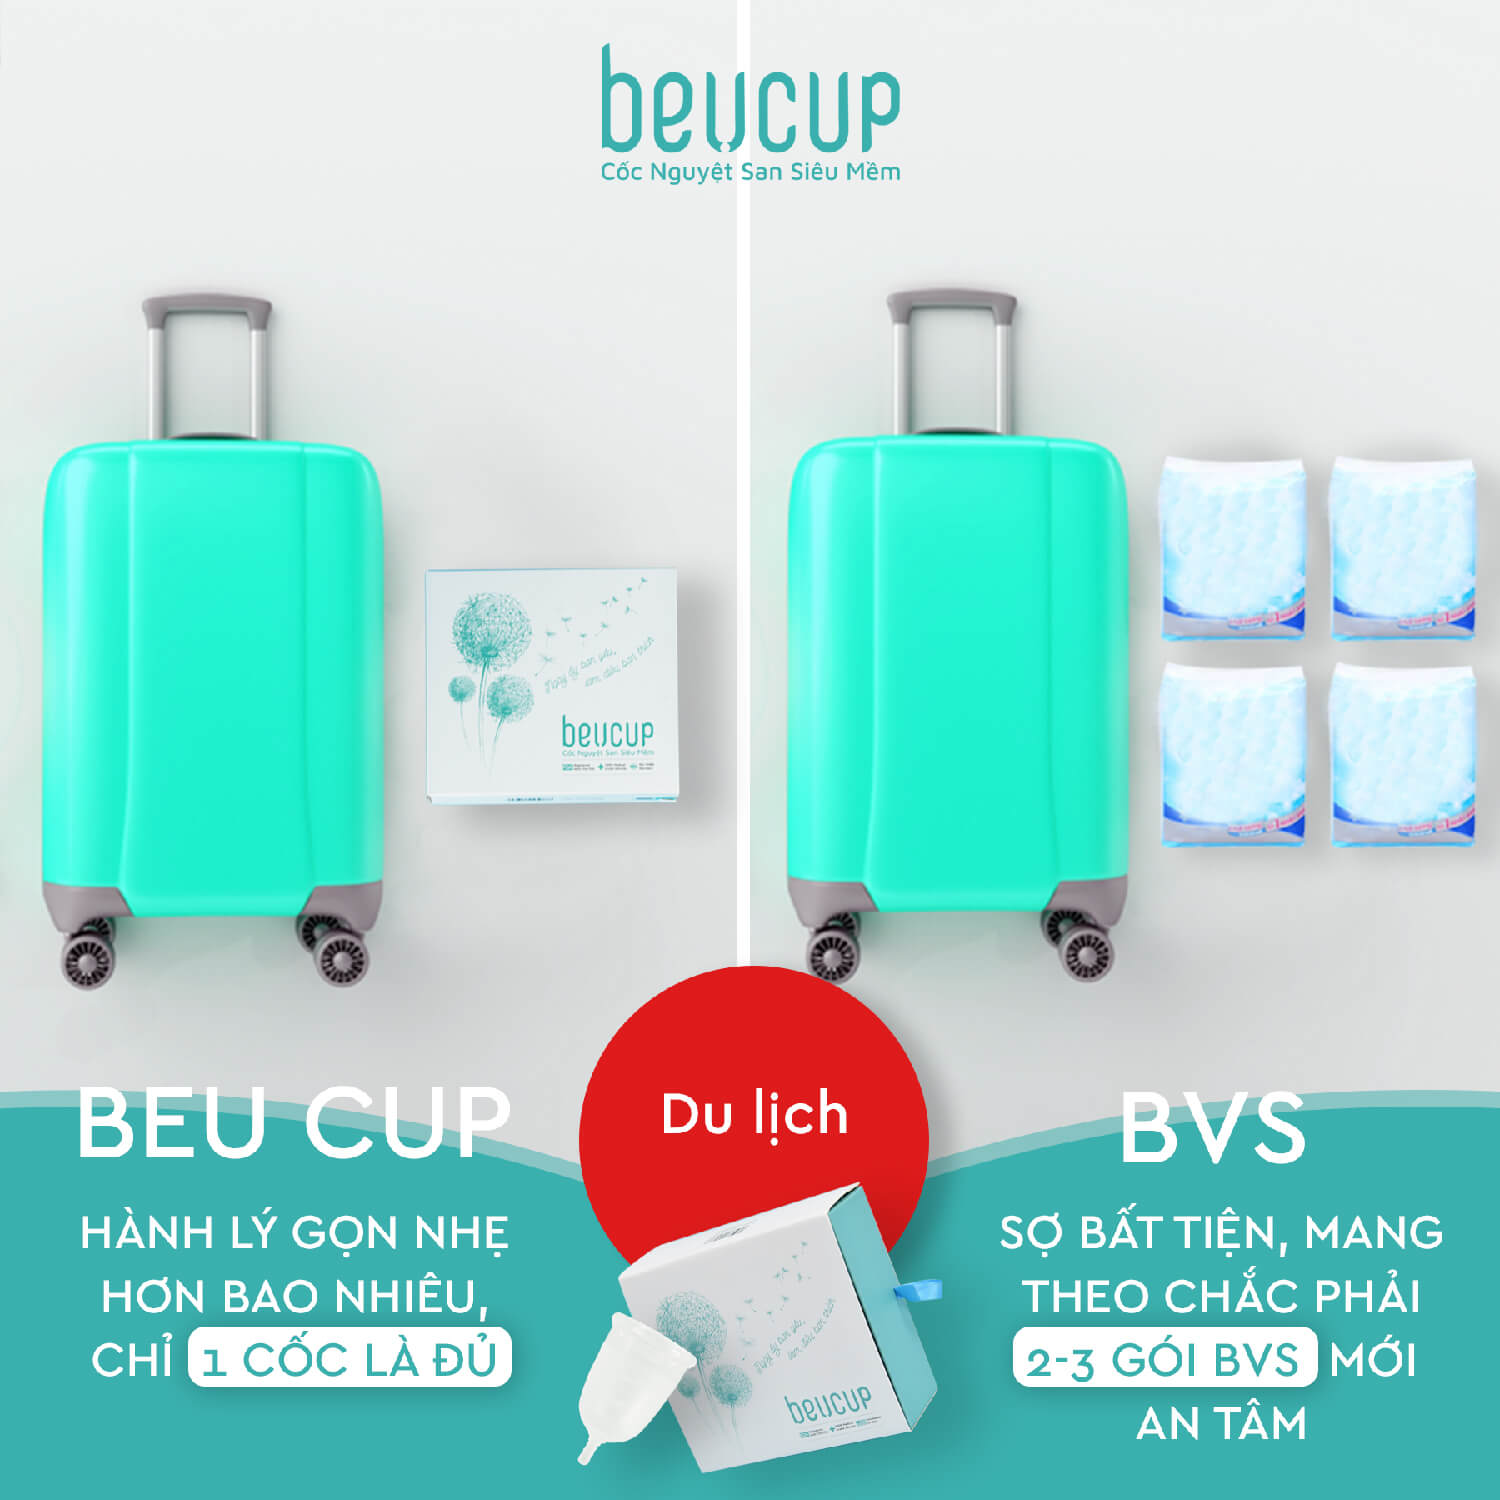 COMBO 2 bộ sản phẩm Cốc Nguyệt San BeU Cup TẶNG 1 hộp dung dịch vệ sinh BeU Care, chuẩn FDA HOA KỲ, 100% silicone Y Tế WACKER ĐỨC, HÀNG CHÍNH HÃNG